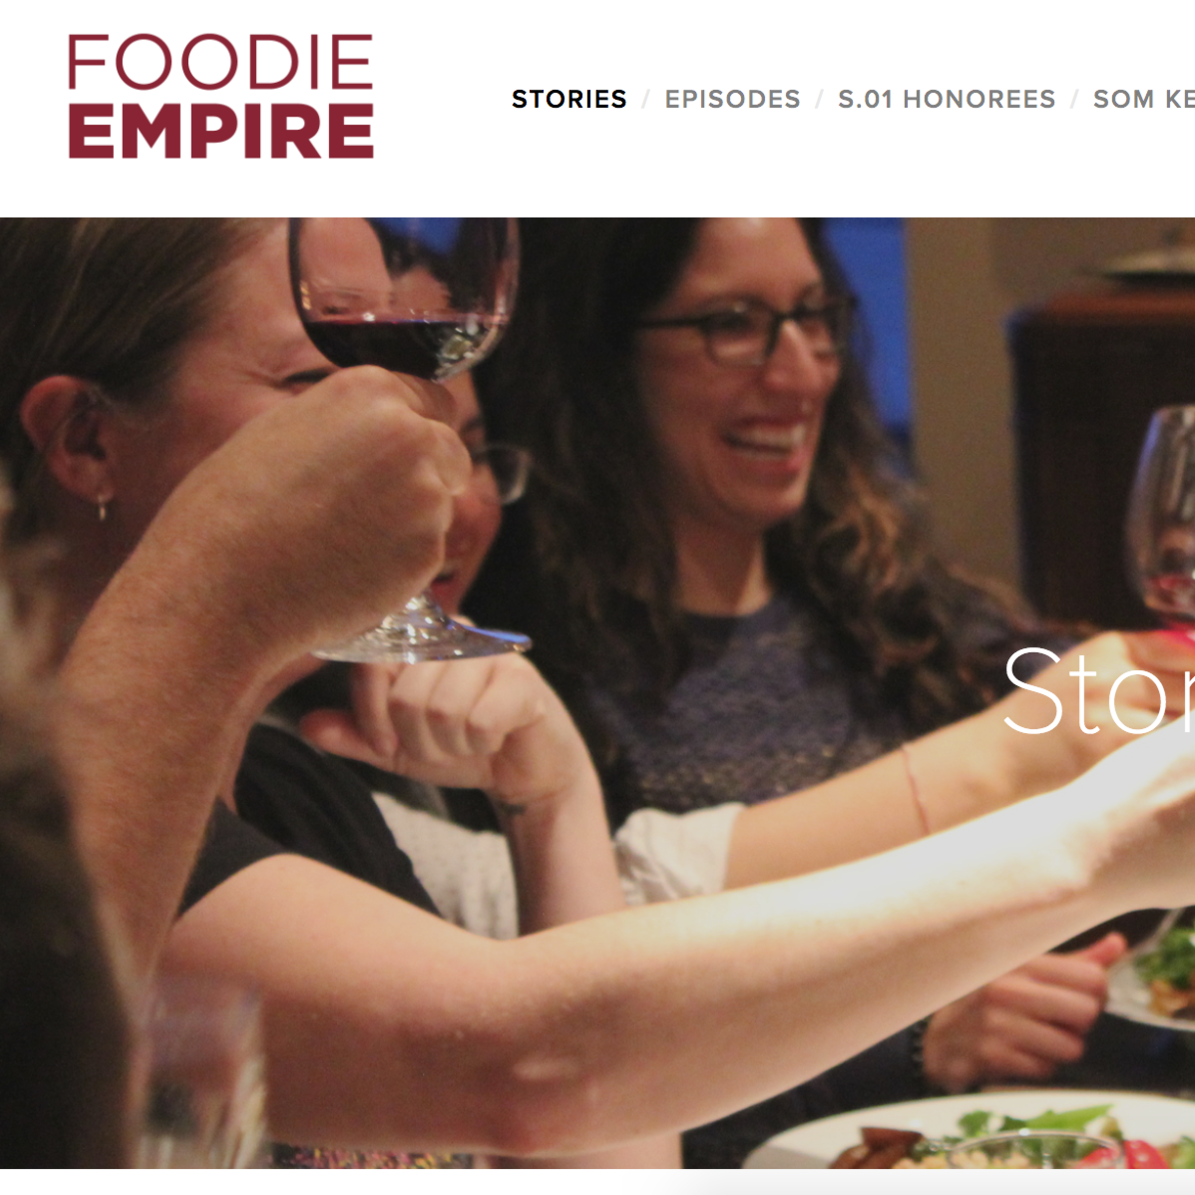 Foodie Empire Stories on Seattle Foodies by Dana Dyksterhuis